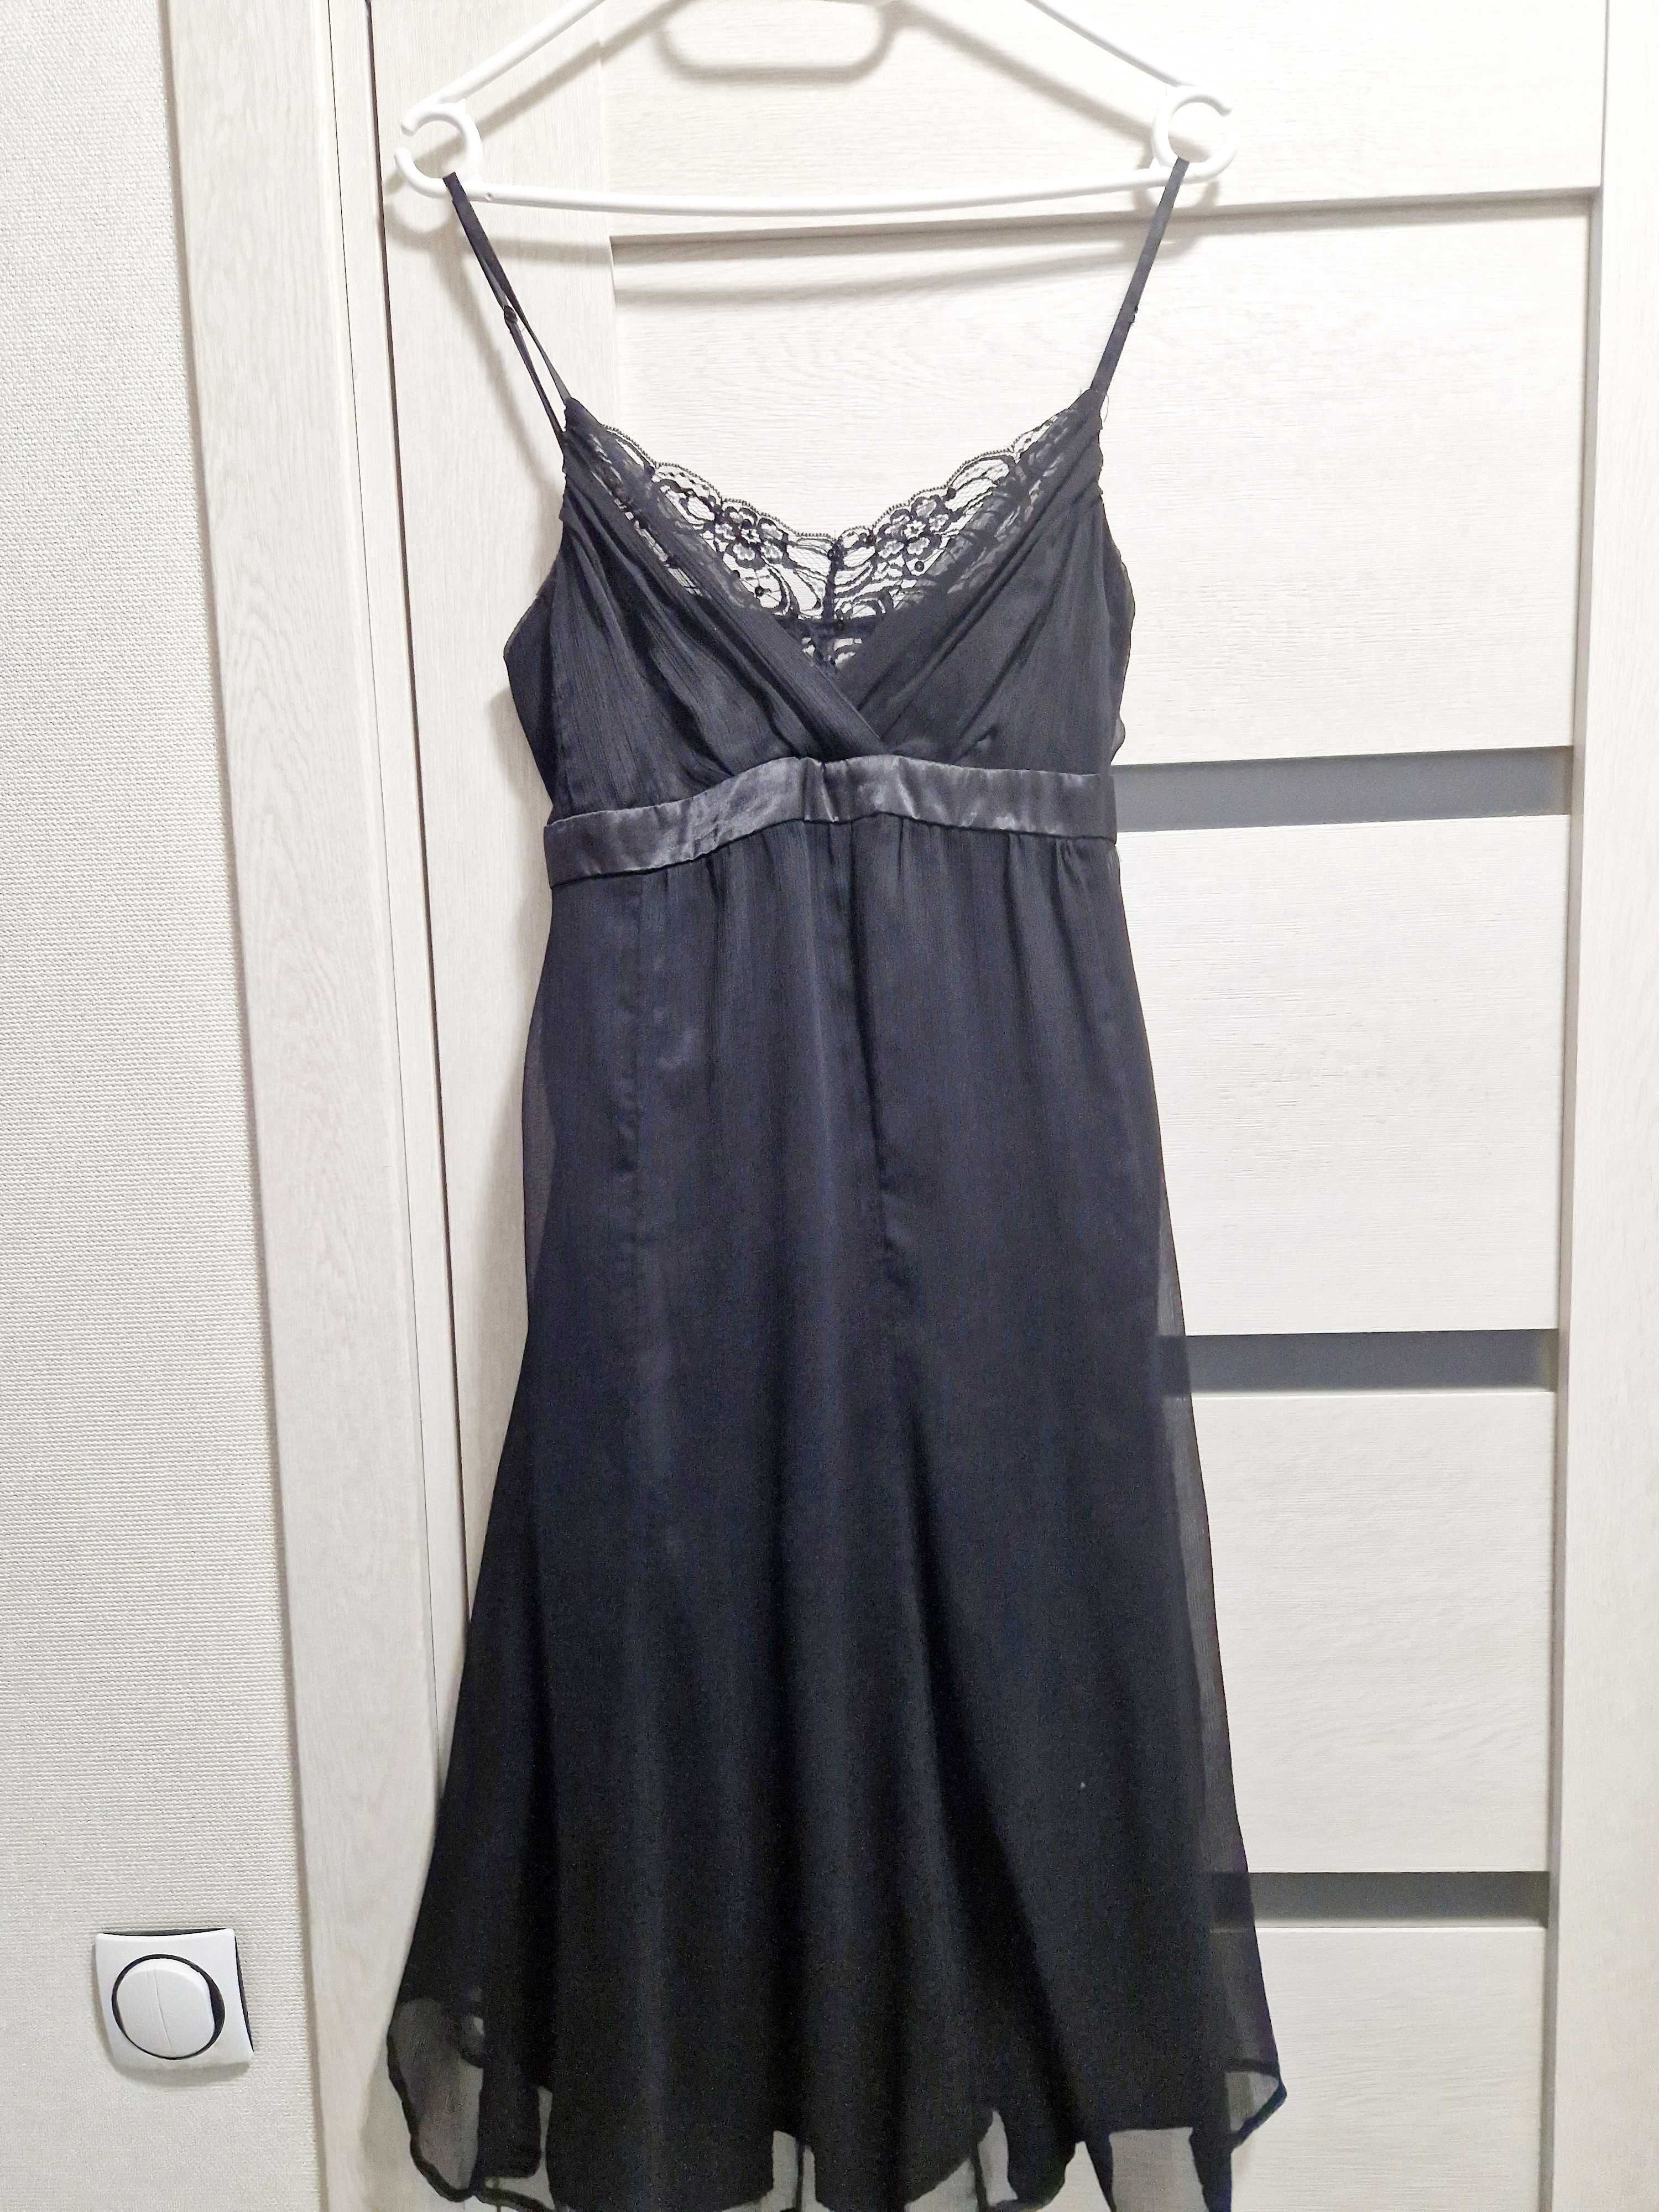 Розпродаж! Нарядна сукня за 350 грн!